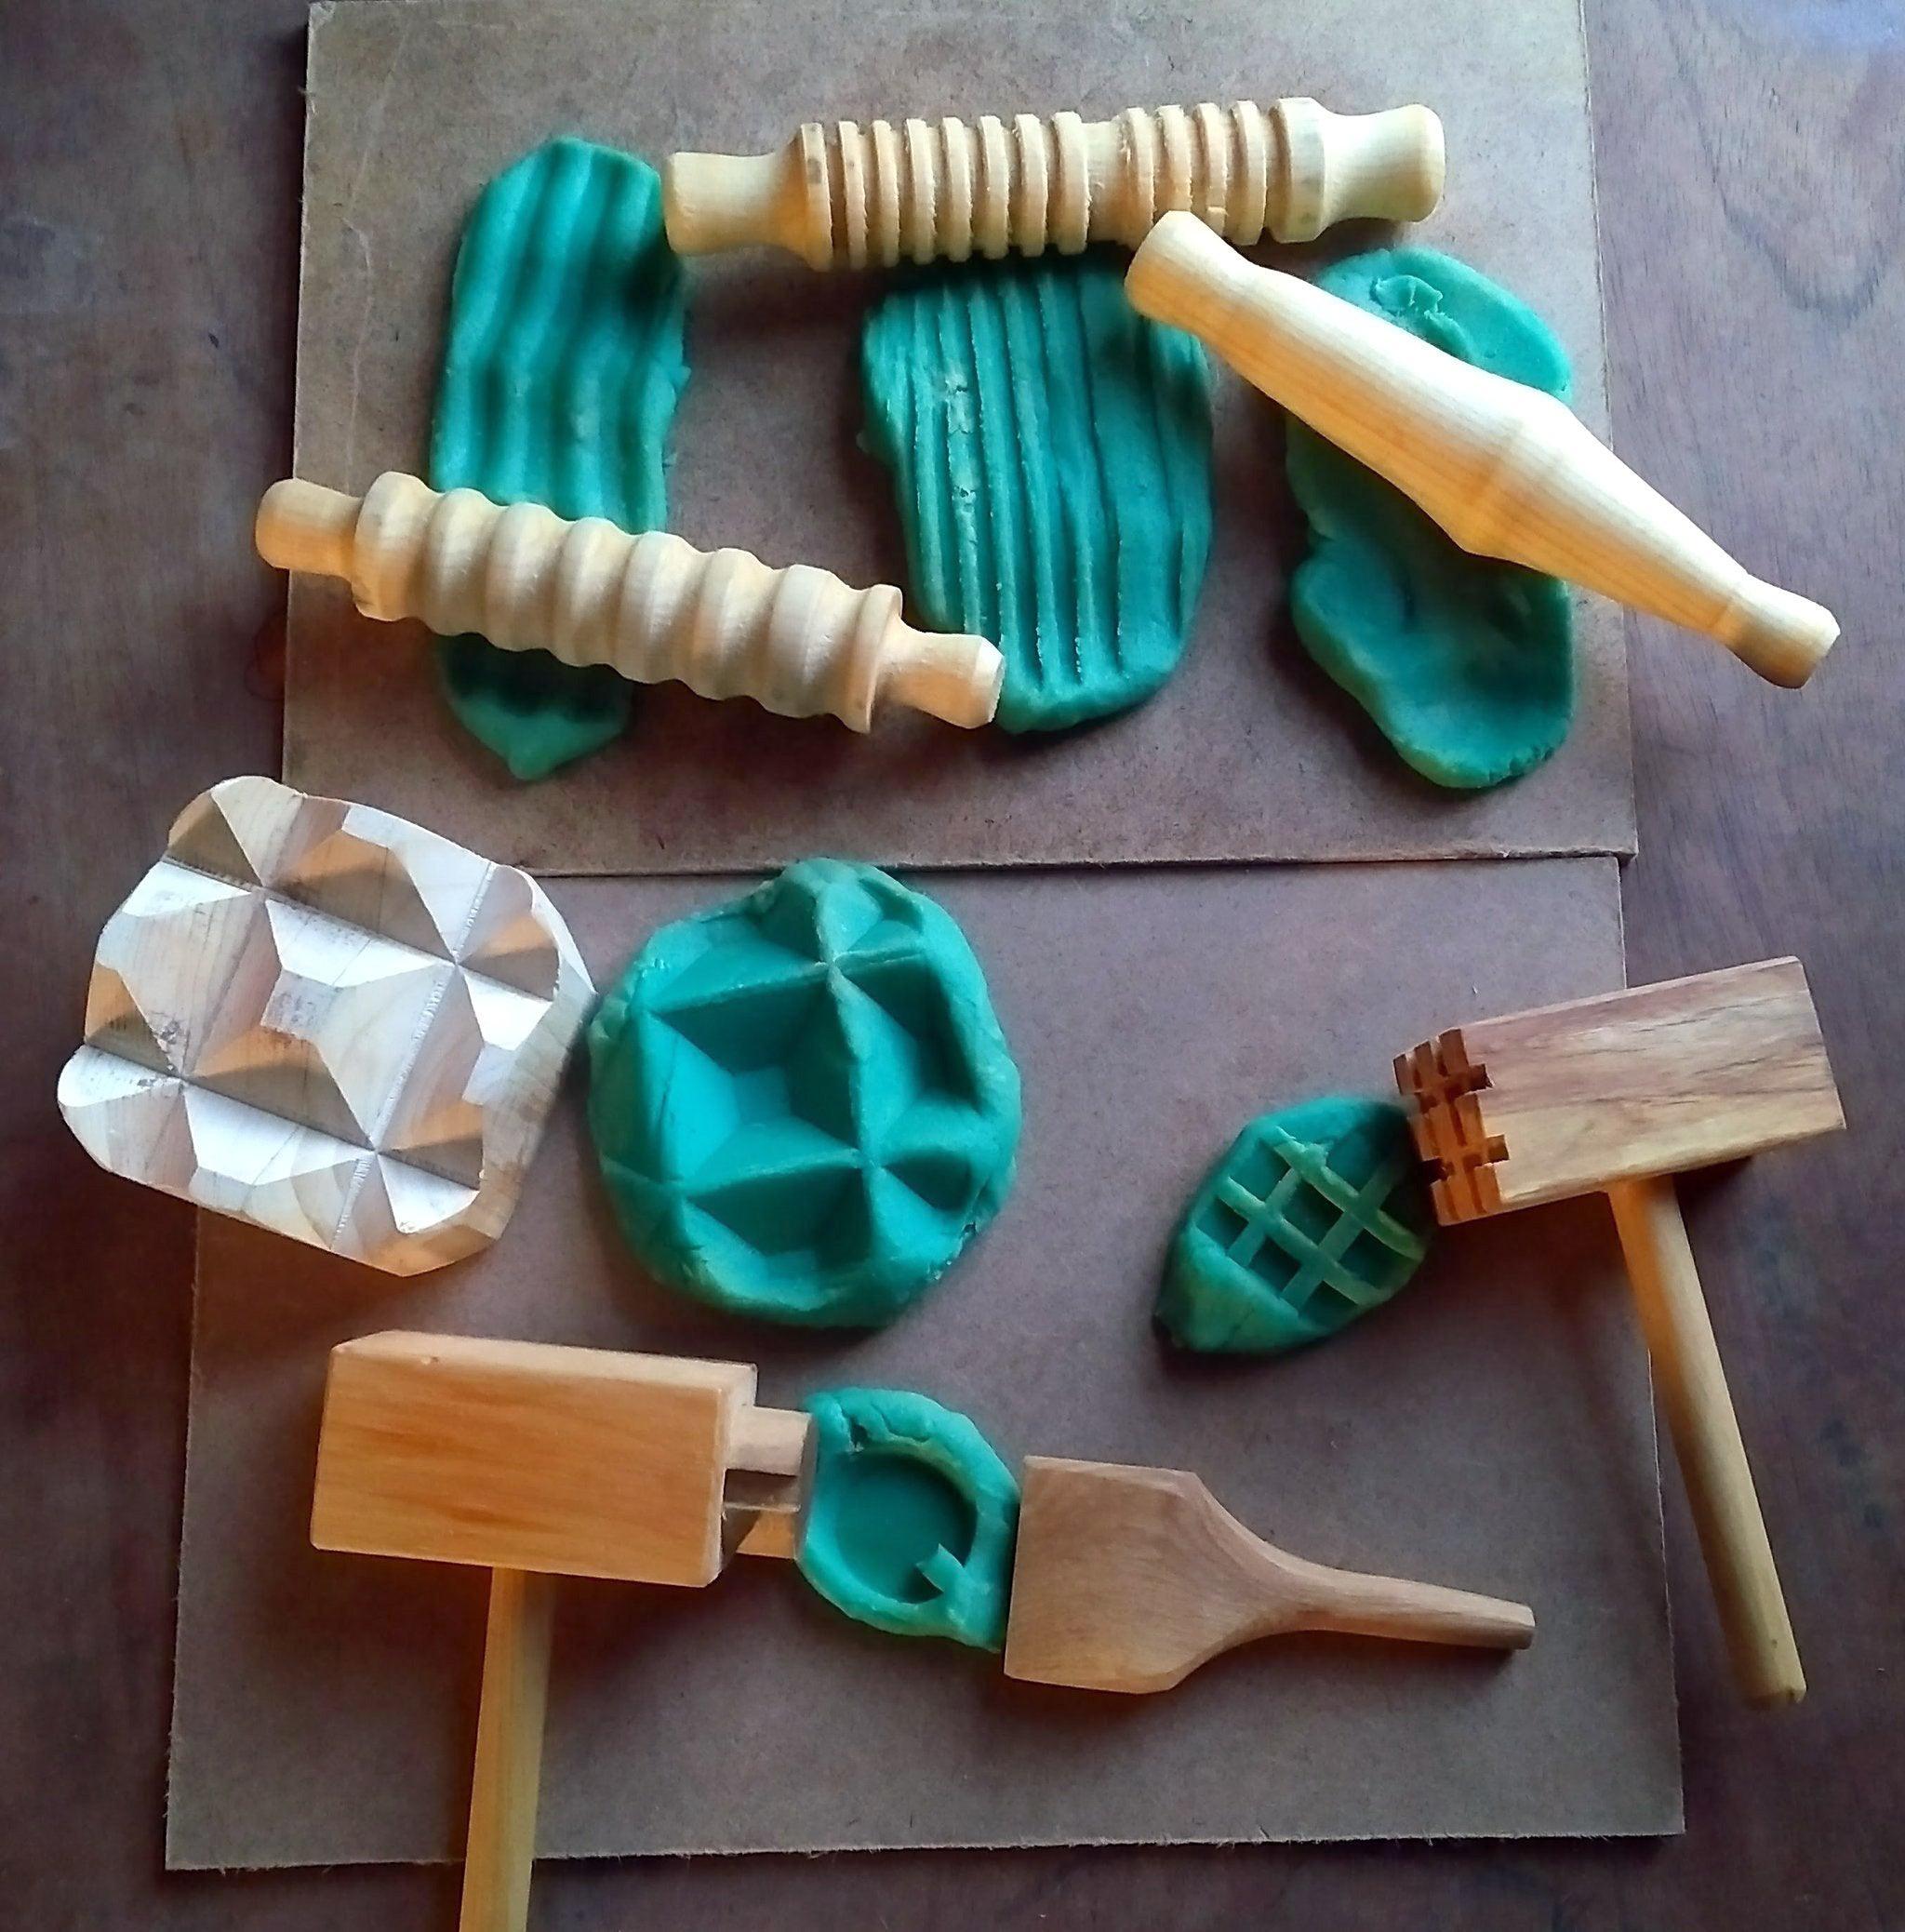 Wooden Dough Tools - Set of 12